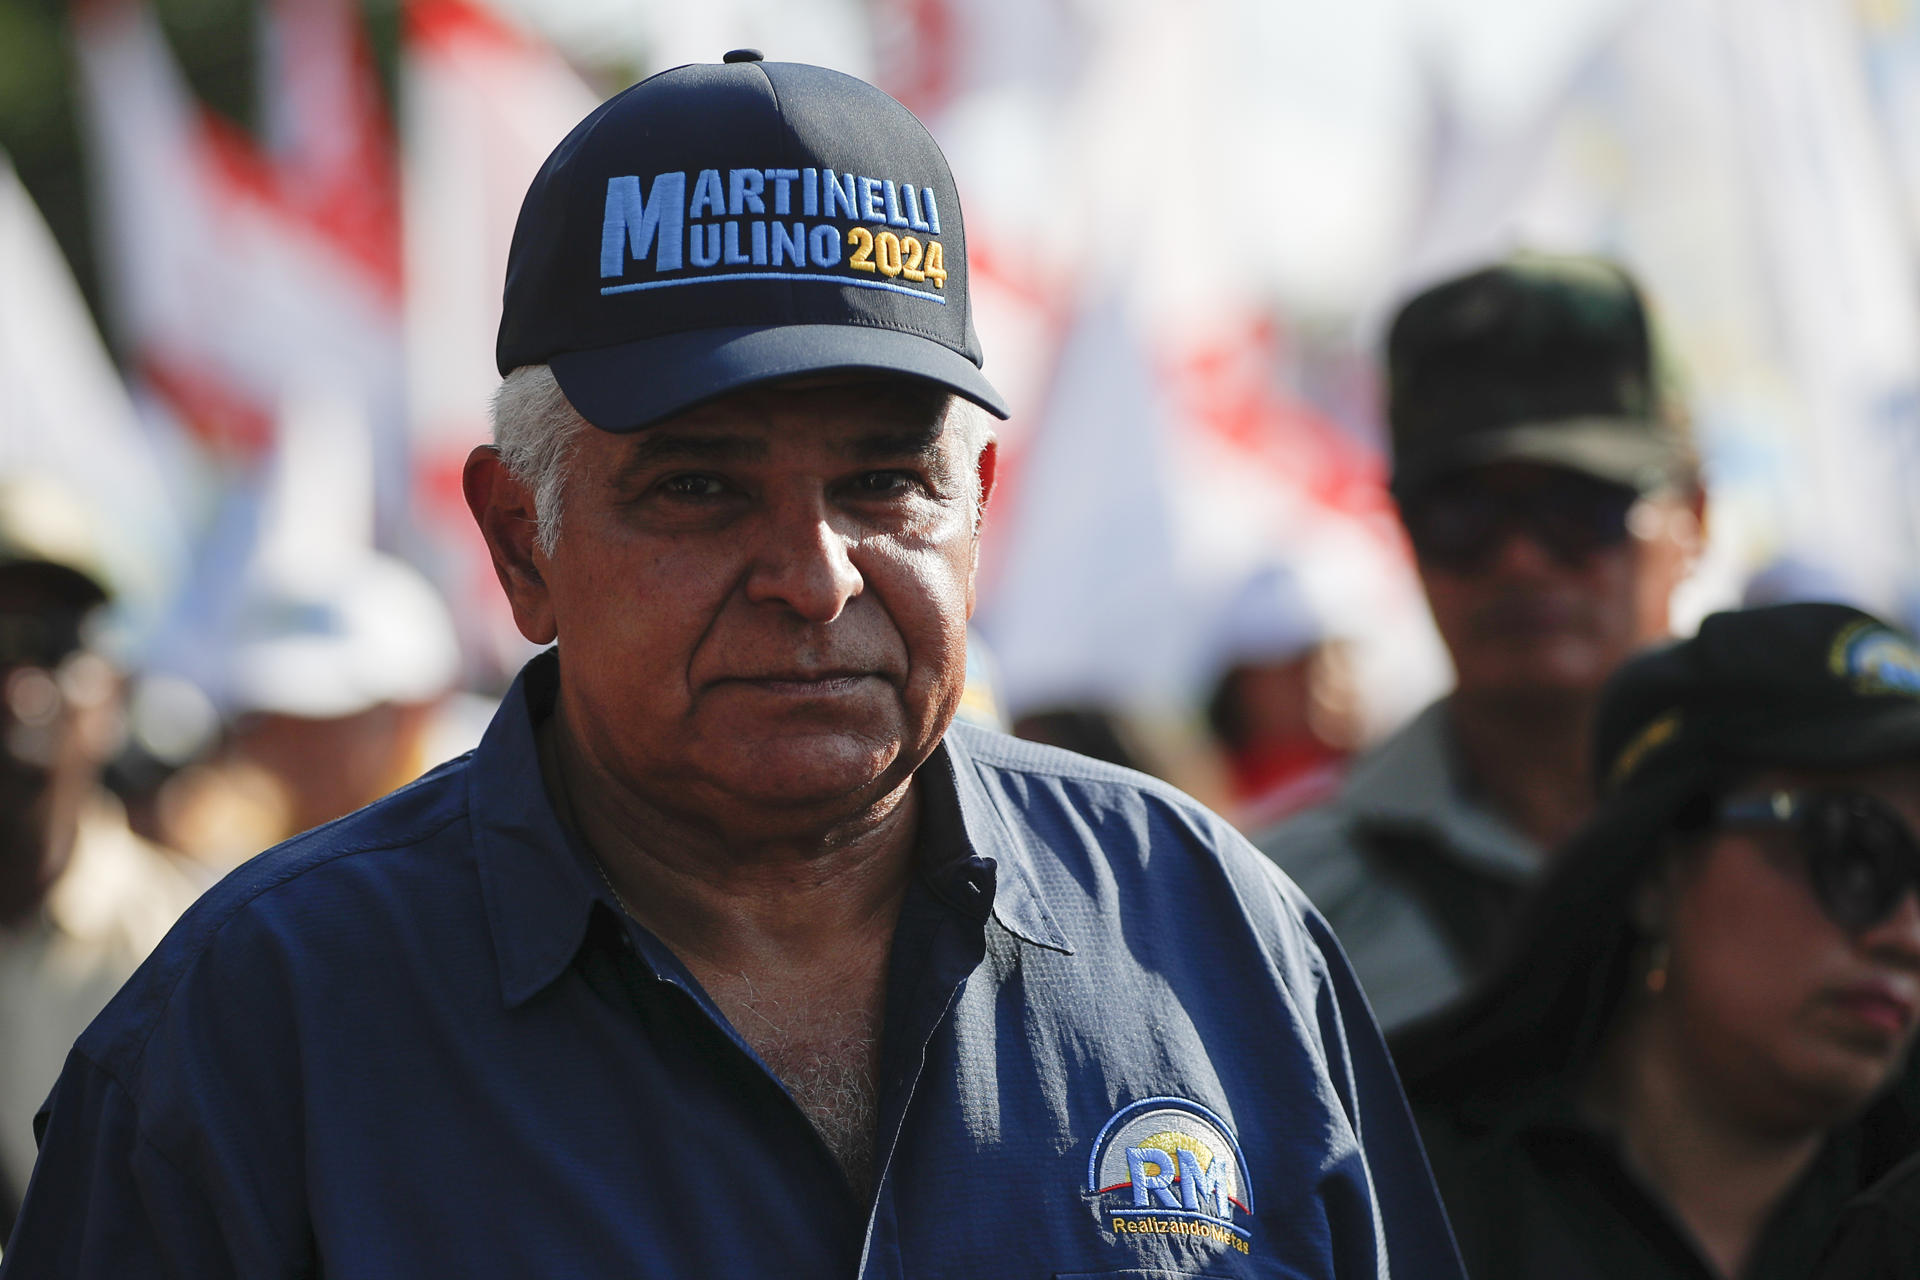 Las elecciones serán “una farsa” si anulan su candidatura, afirma Mulino